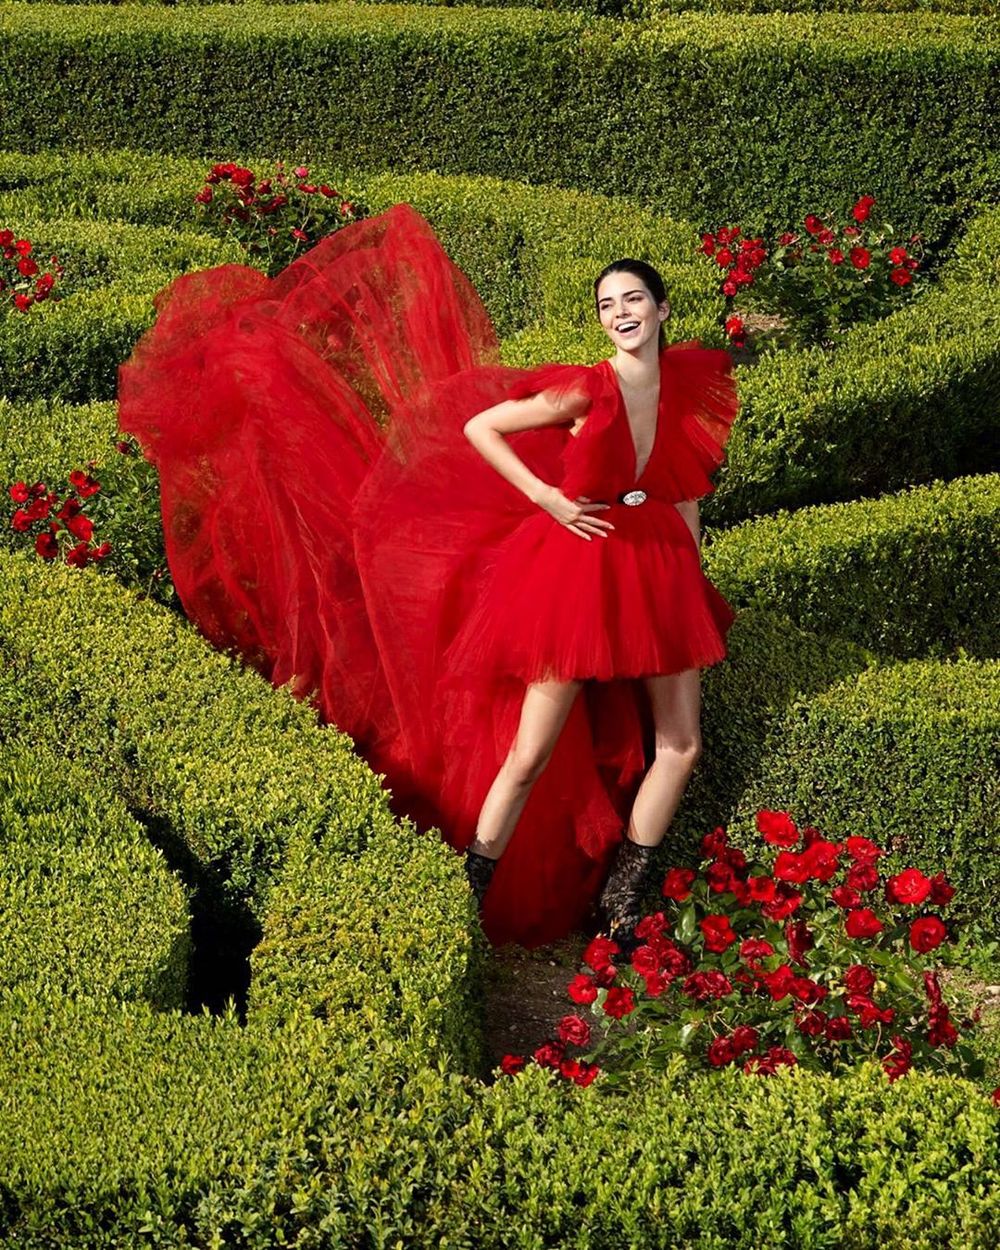  
Chân dài Victoria’s Secret cười rạng rỡ giữa khung cảnh tươi mát của cây xanh và hoa hồng. 